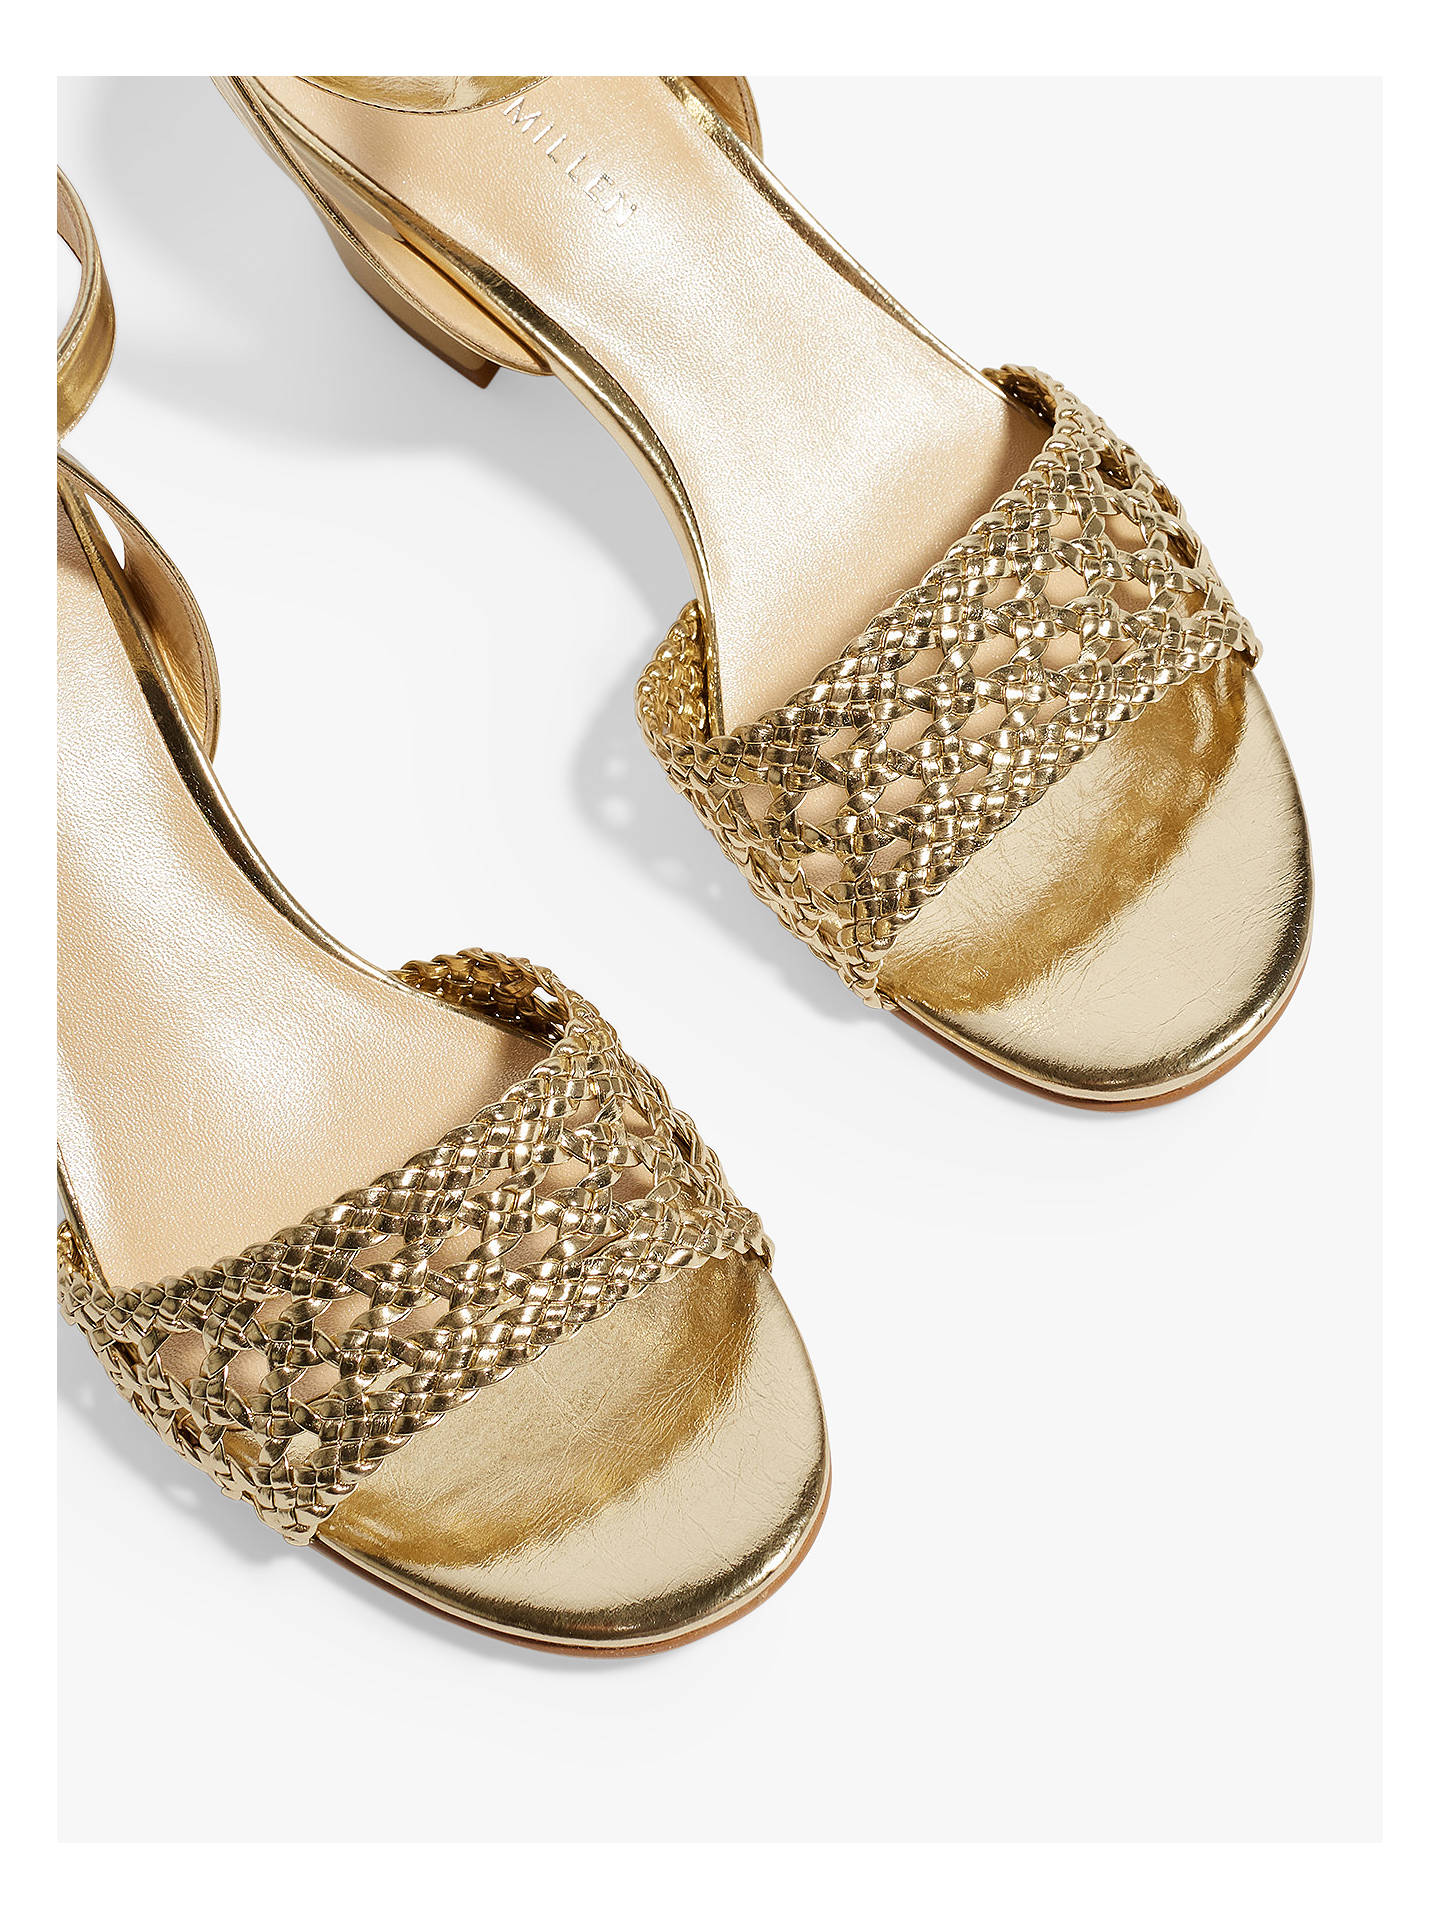 Karen Millen Woven Block Heel Sandals, Gold at John Lewis & Partners